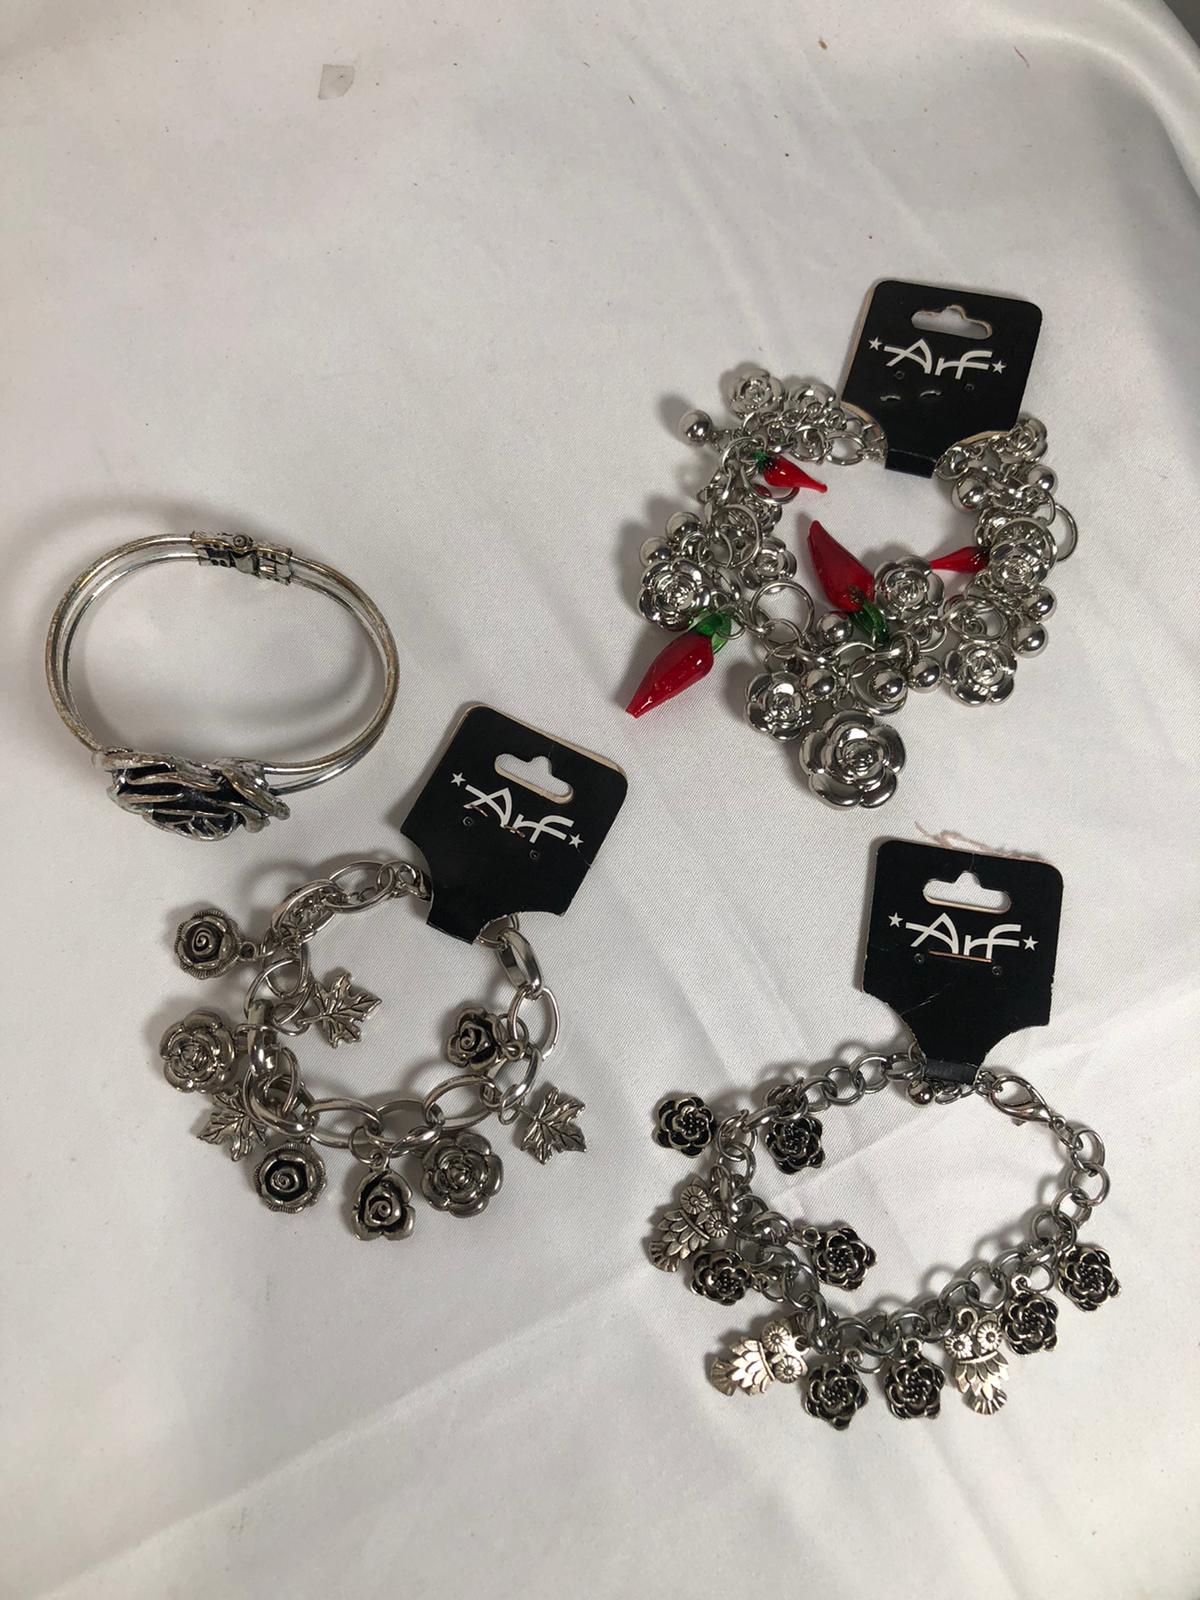 Set of 4 Arf Rose Bracelets - Stylish, Elegant, and Affordable